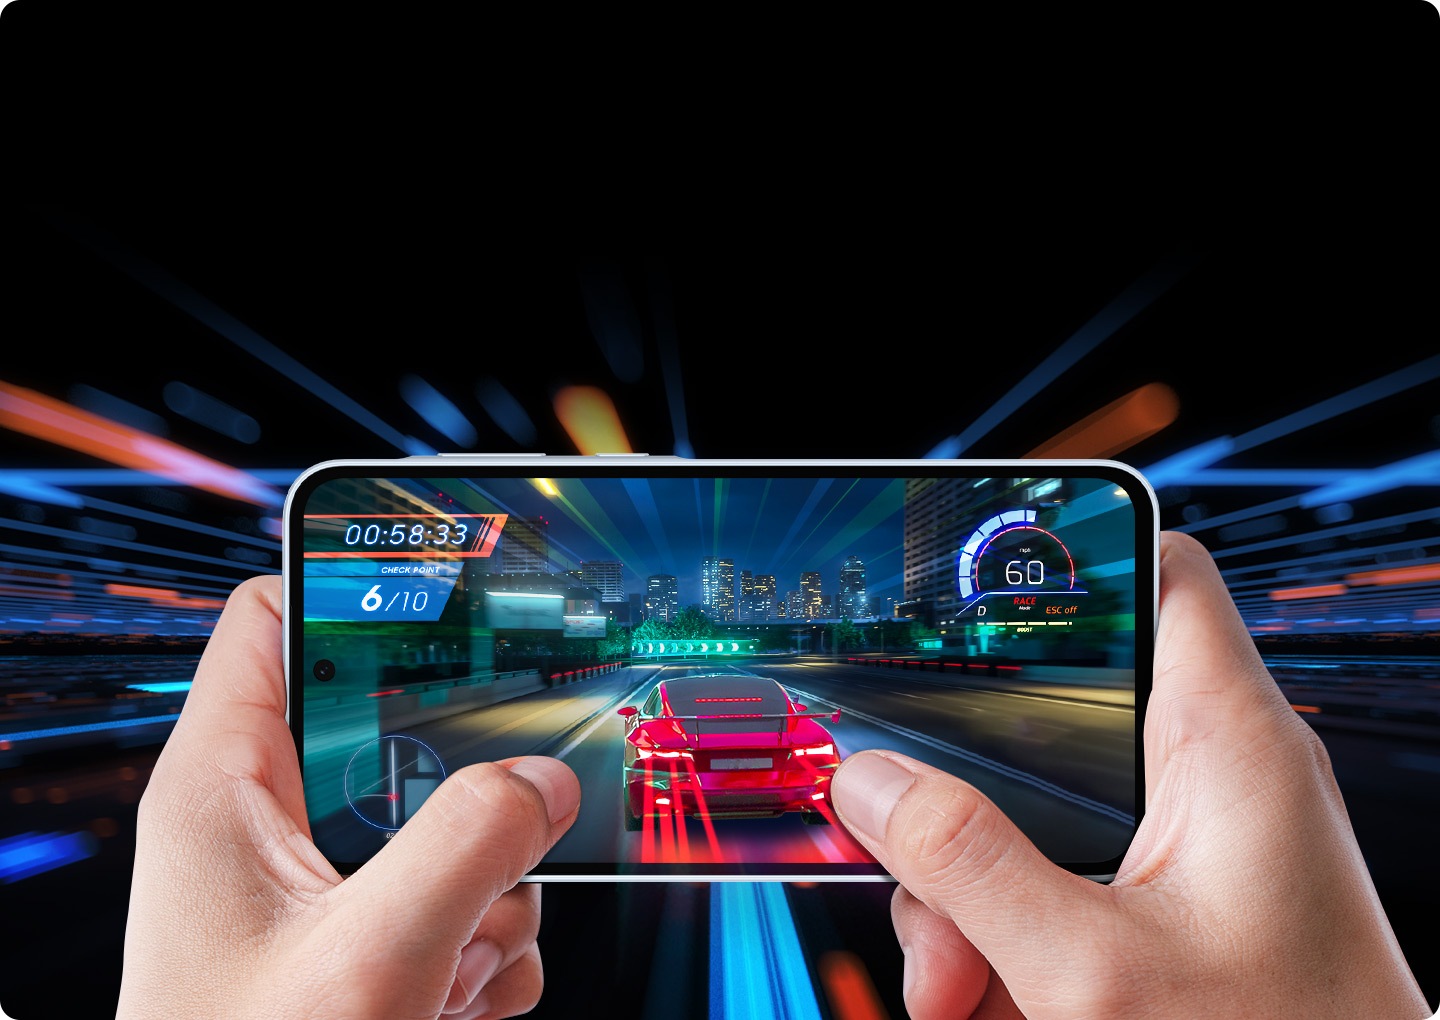 ภาพมุมมองบุคคลที่หนึ่งของเกมแข่งรถที่เล่นอยู่ในสมาร์ทโฟนที่ถืออยู่ในมือสองข้าง เกมแสดงผลรถสปอร์ตสีแดงคันหนึ่งที่เร่งความเร็วไปบนถนนไฮเวย์ในเมืองยามค่ำคืน